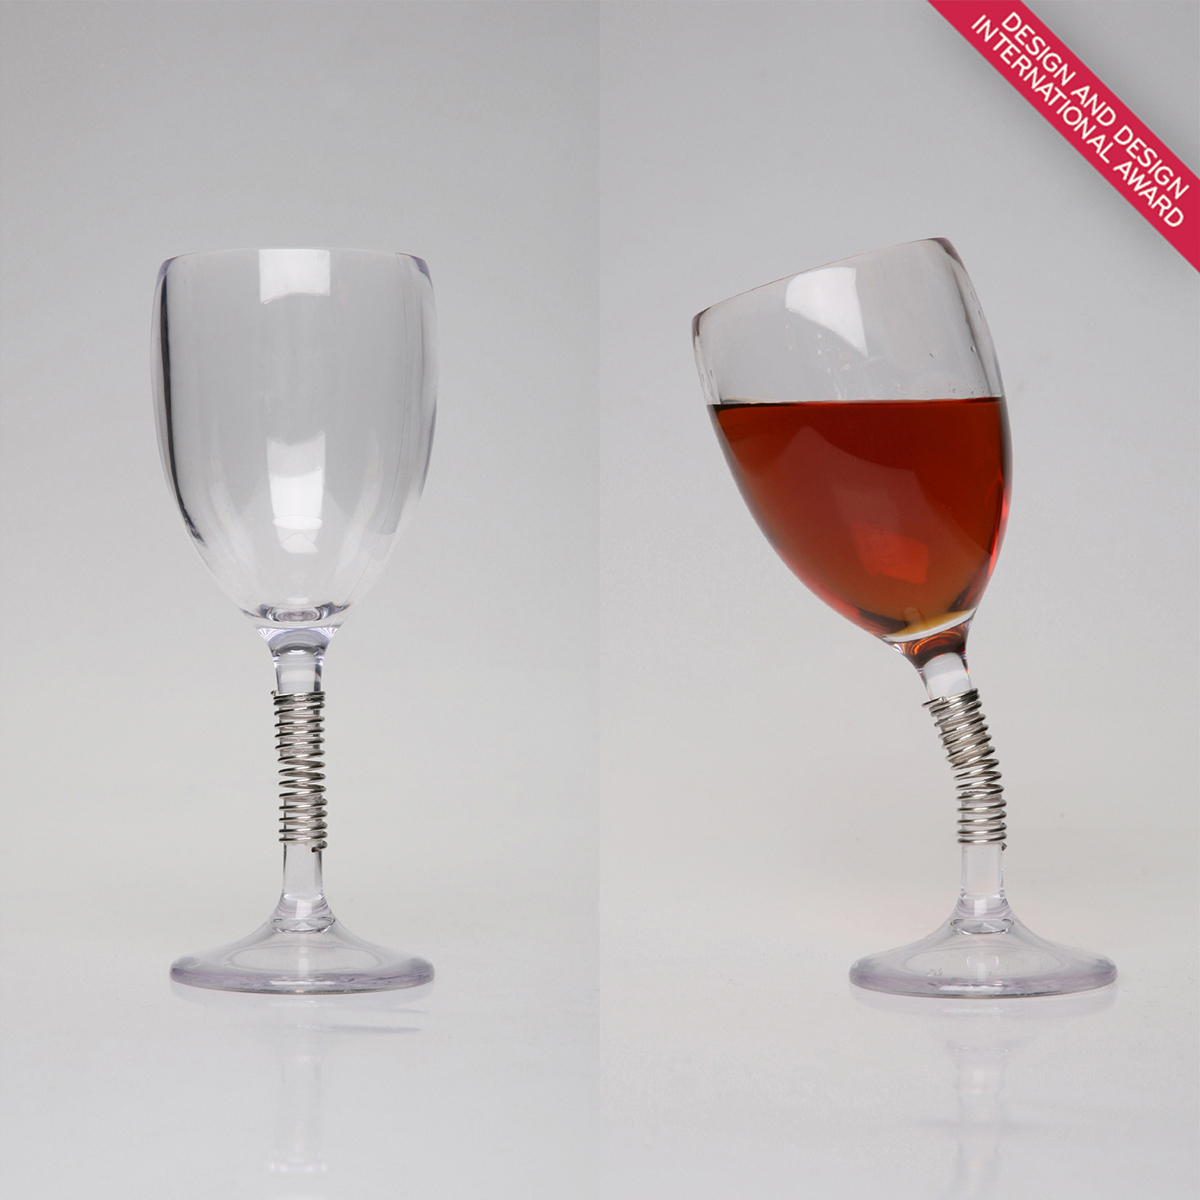 alcohol  glass  alcohol awareness Critical Design conceptual design